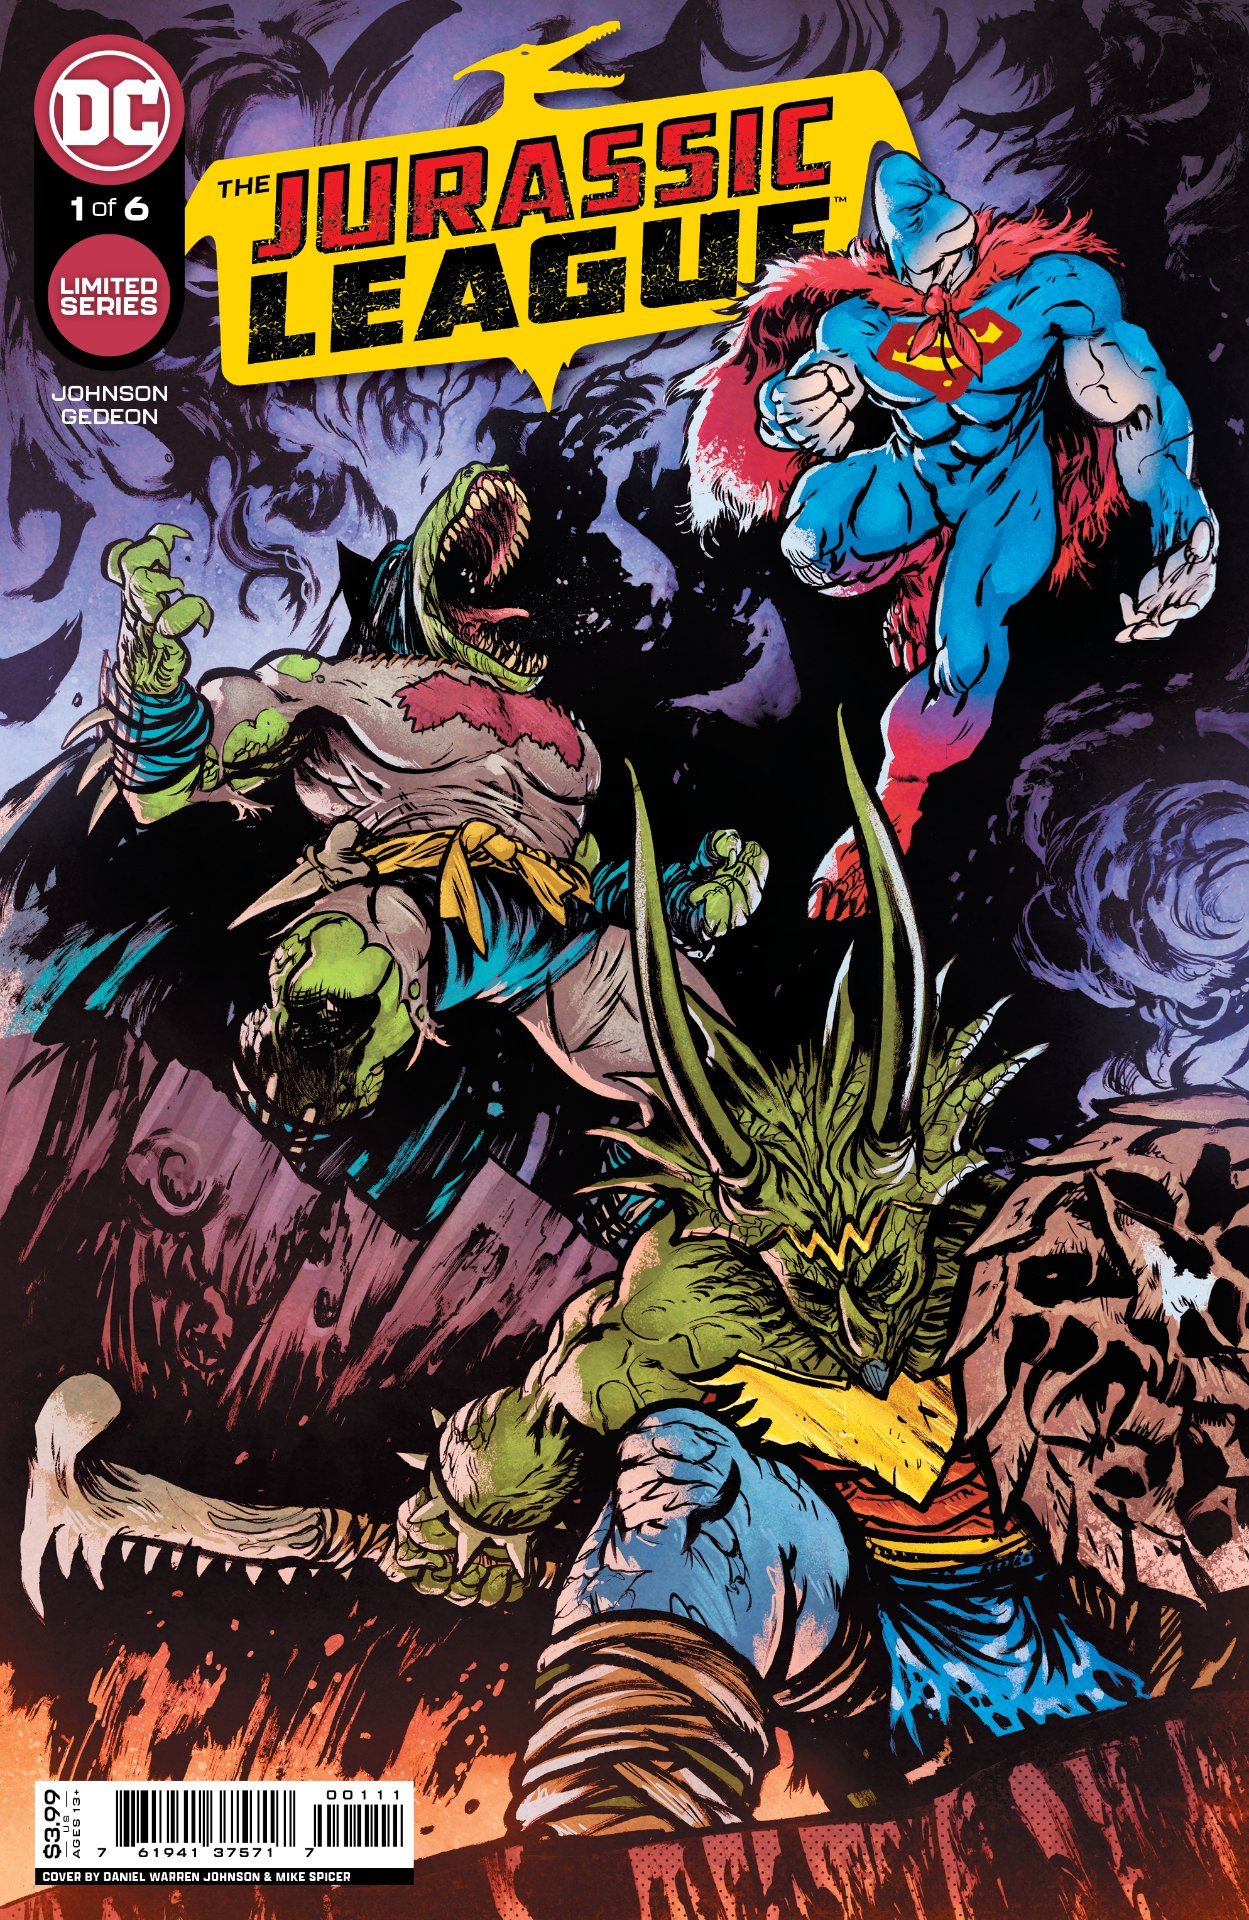 Cover di Jurassic League 1 di Daniel Warren Johnson